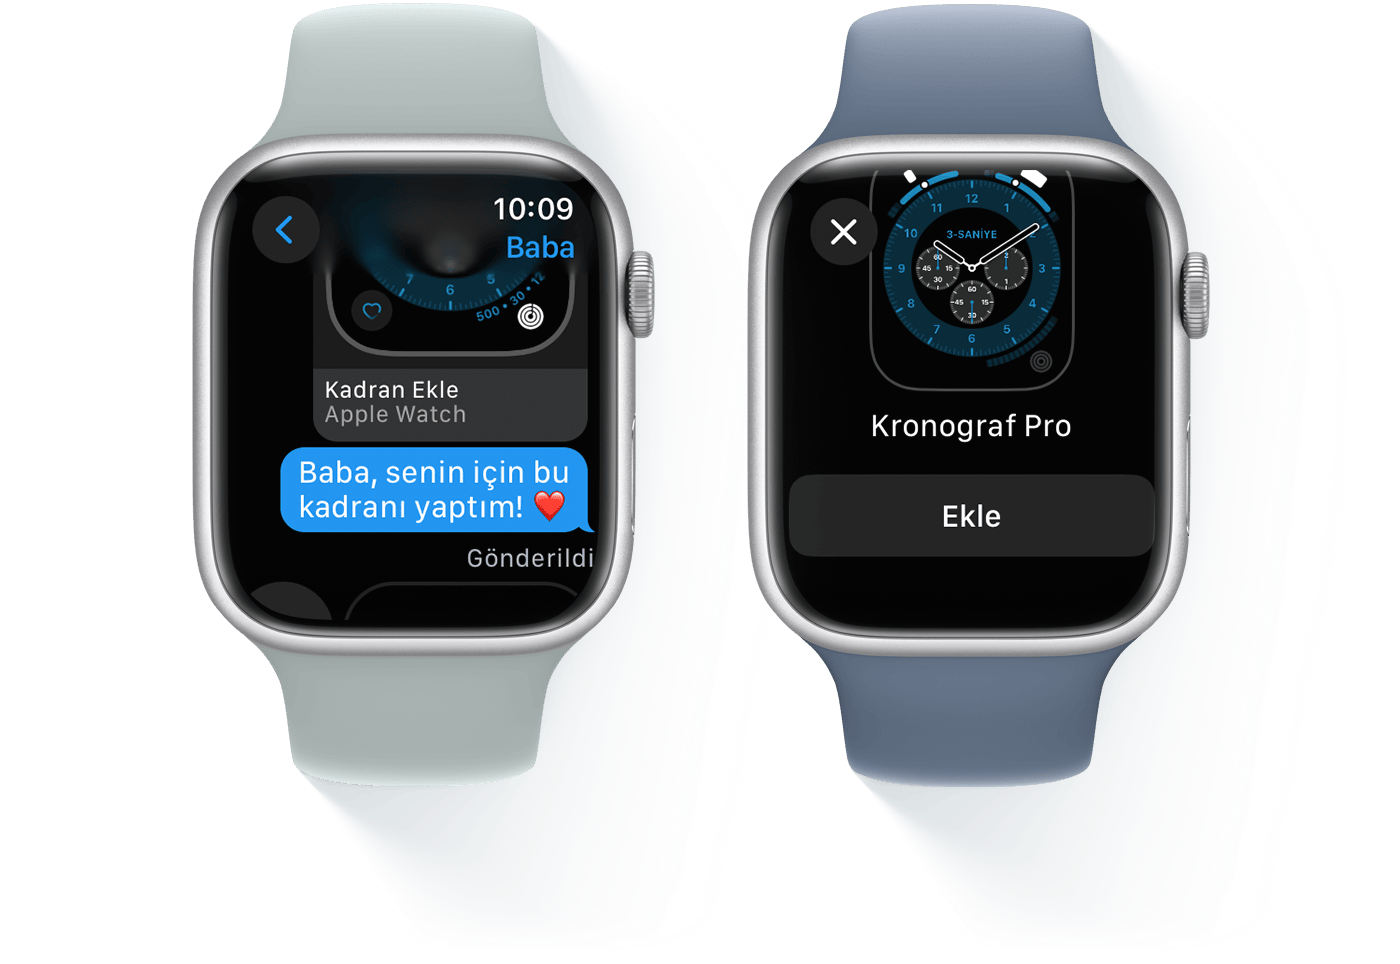 Biri bir mesaj yazışmasını, diğeri Kronograf Pro Kadranını gösteren iki Apple Watch